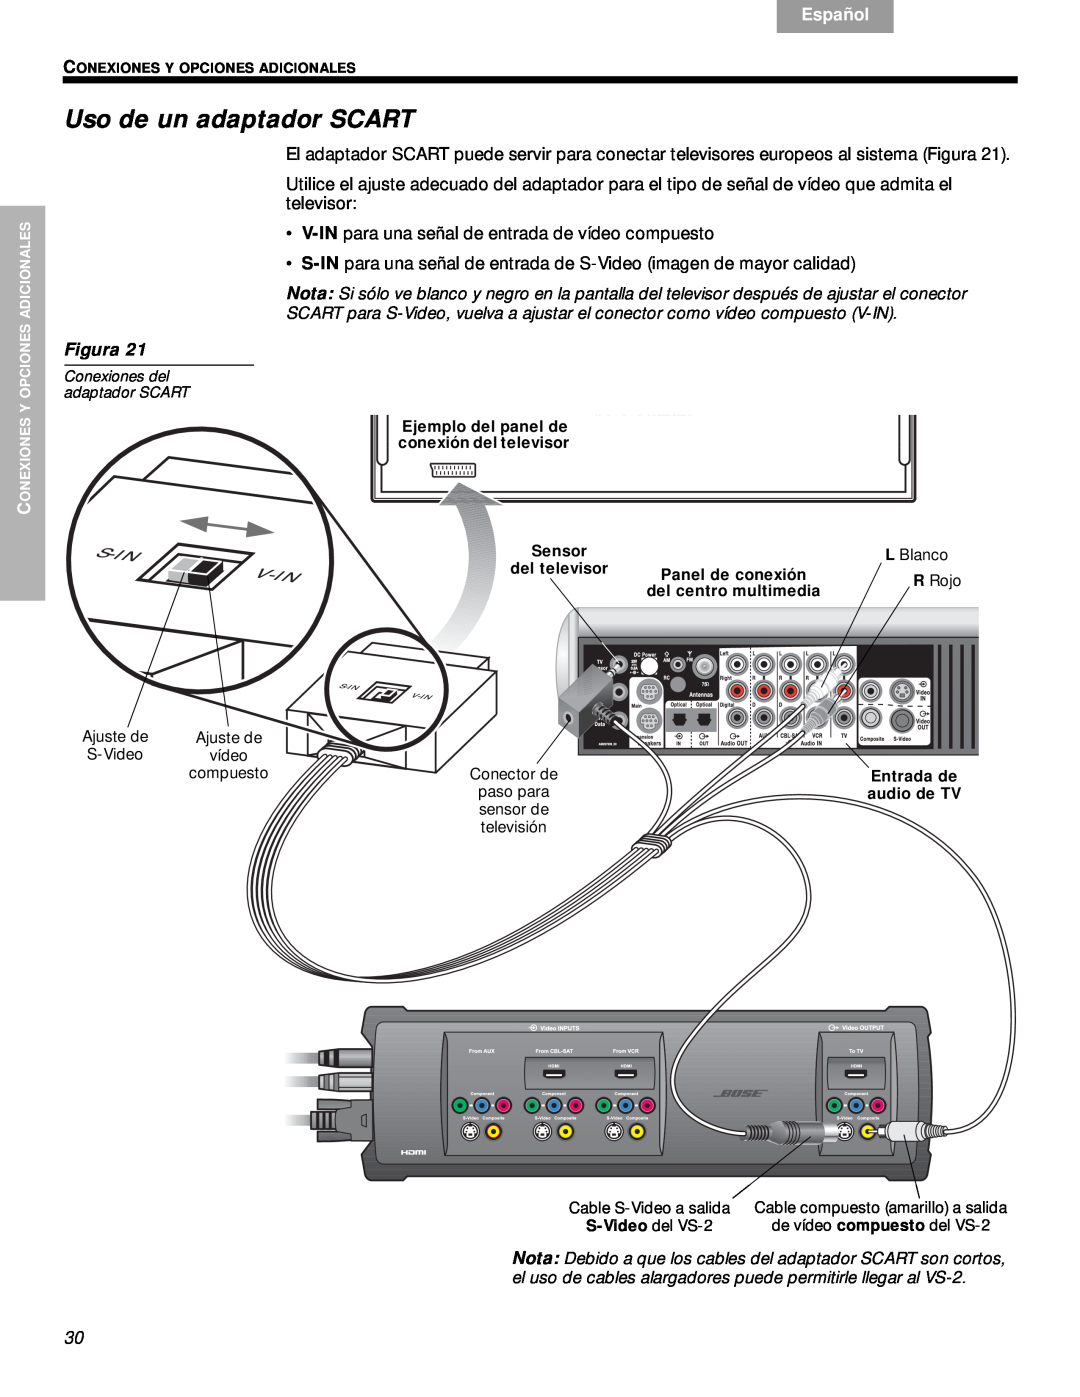 Bose VS-2 manual Uso de un adaptador SCART, Svenska, Nederlands, Français, Español, English, Figura 